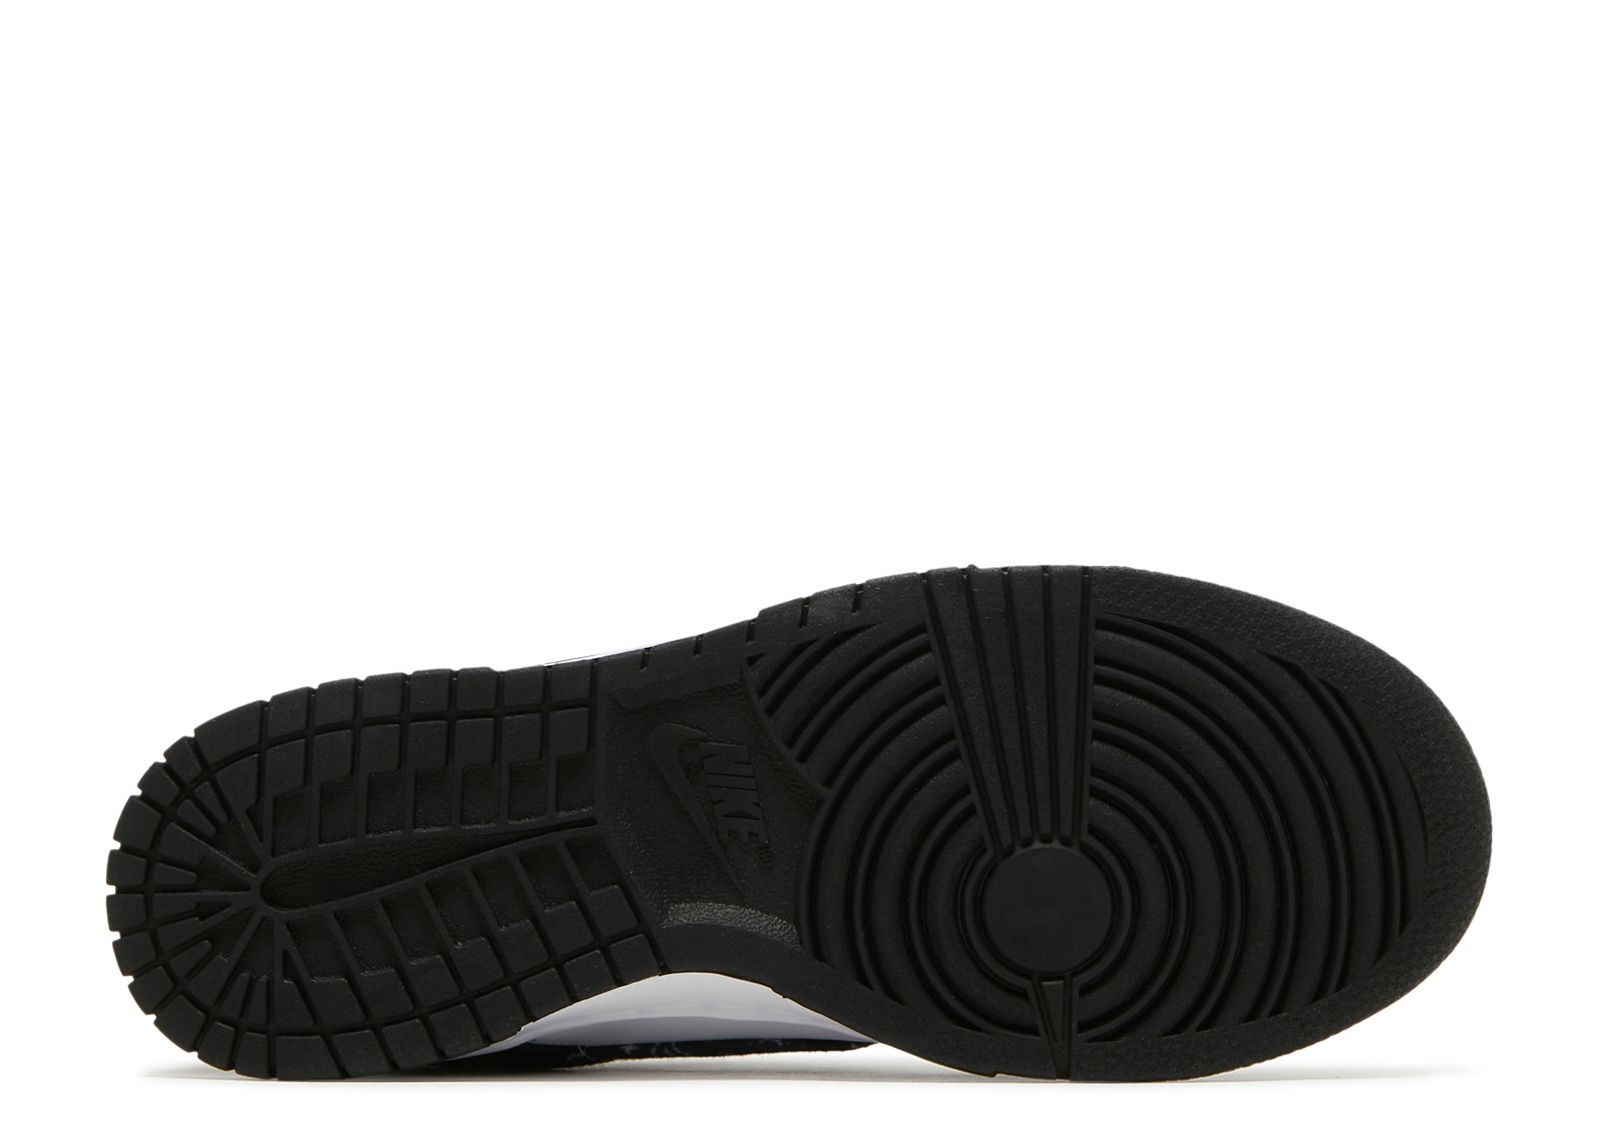 Wmns Dunk Low 'Black Paisley' - Nike - DH4401 100 - black/white ...